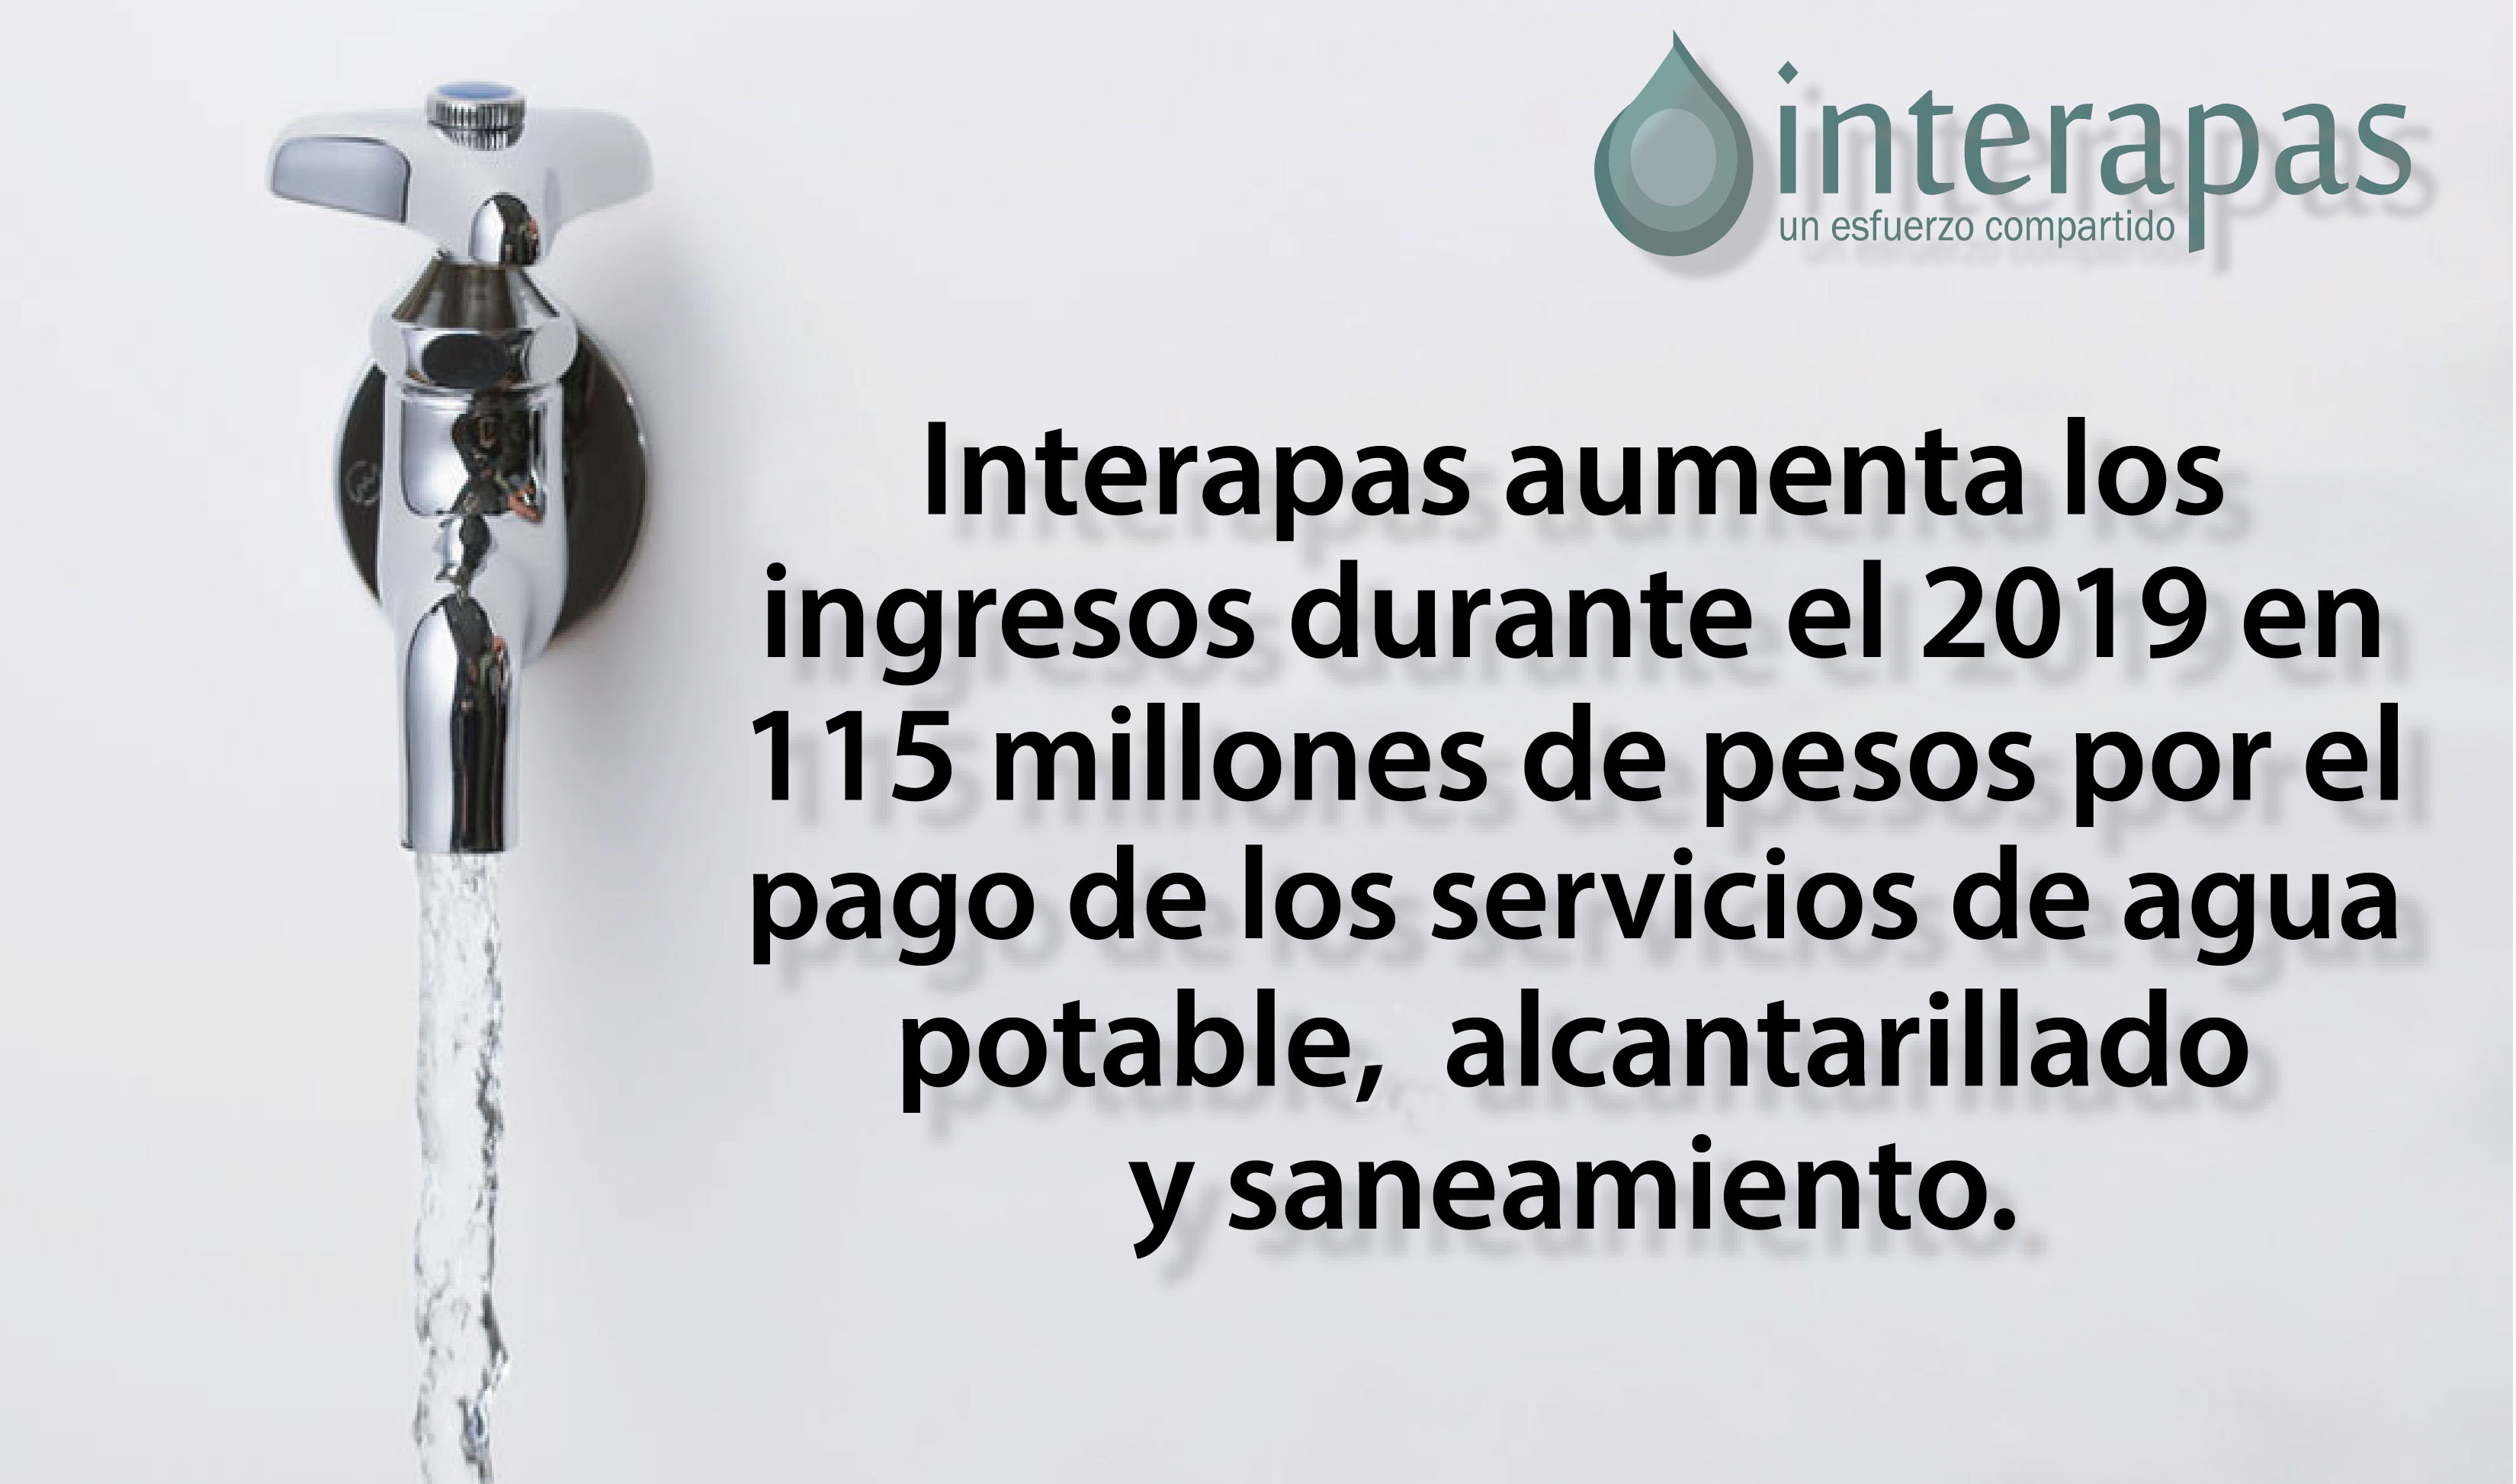 Interapas aumenta los ingresos durante el 2019 en 115 mdp por el pago de los servicios de agua potable, alcantarillado y saneamiento